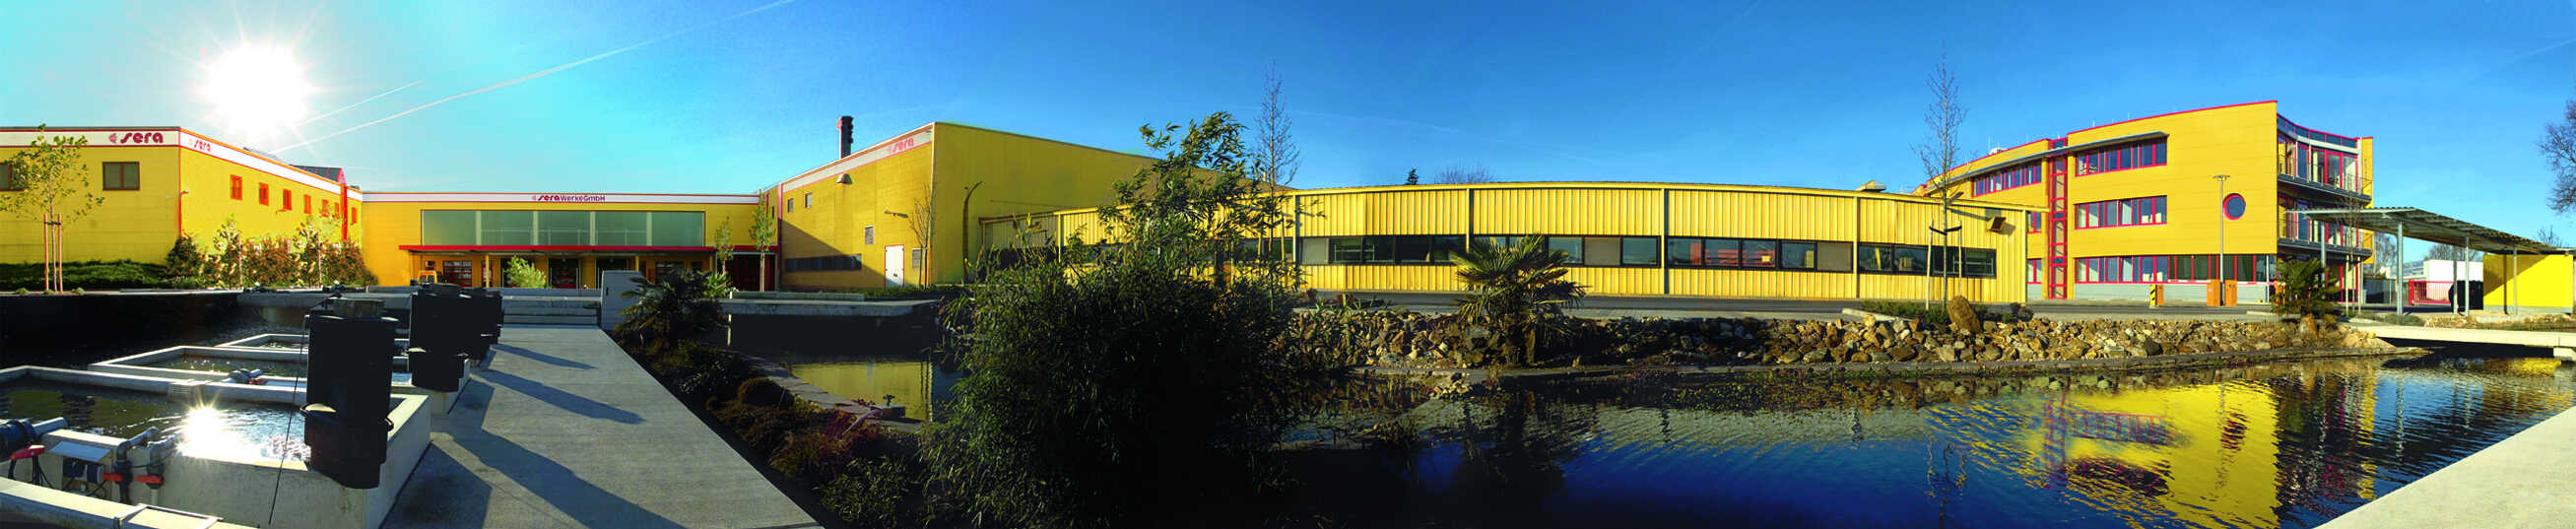 Am sera Unternehmenssitz in Heinsberg werden die hochwertigen Futter- und Pflegemittel für Aquaristik, Gartenteich und Terraristik gefertigt. Foto: © sera